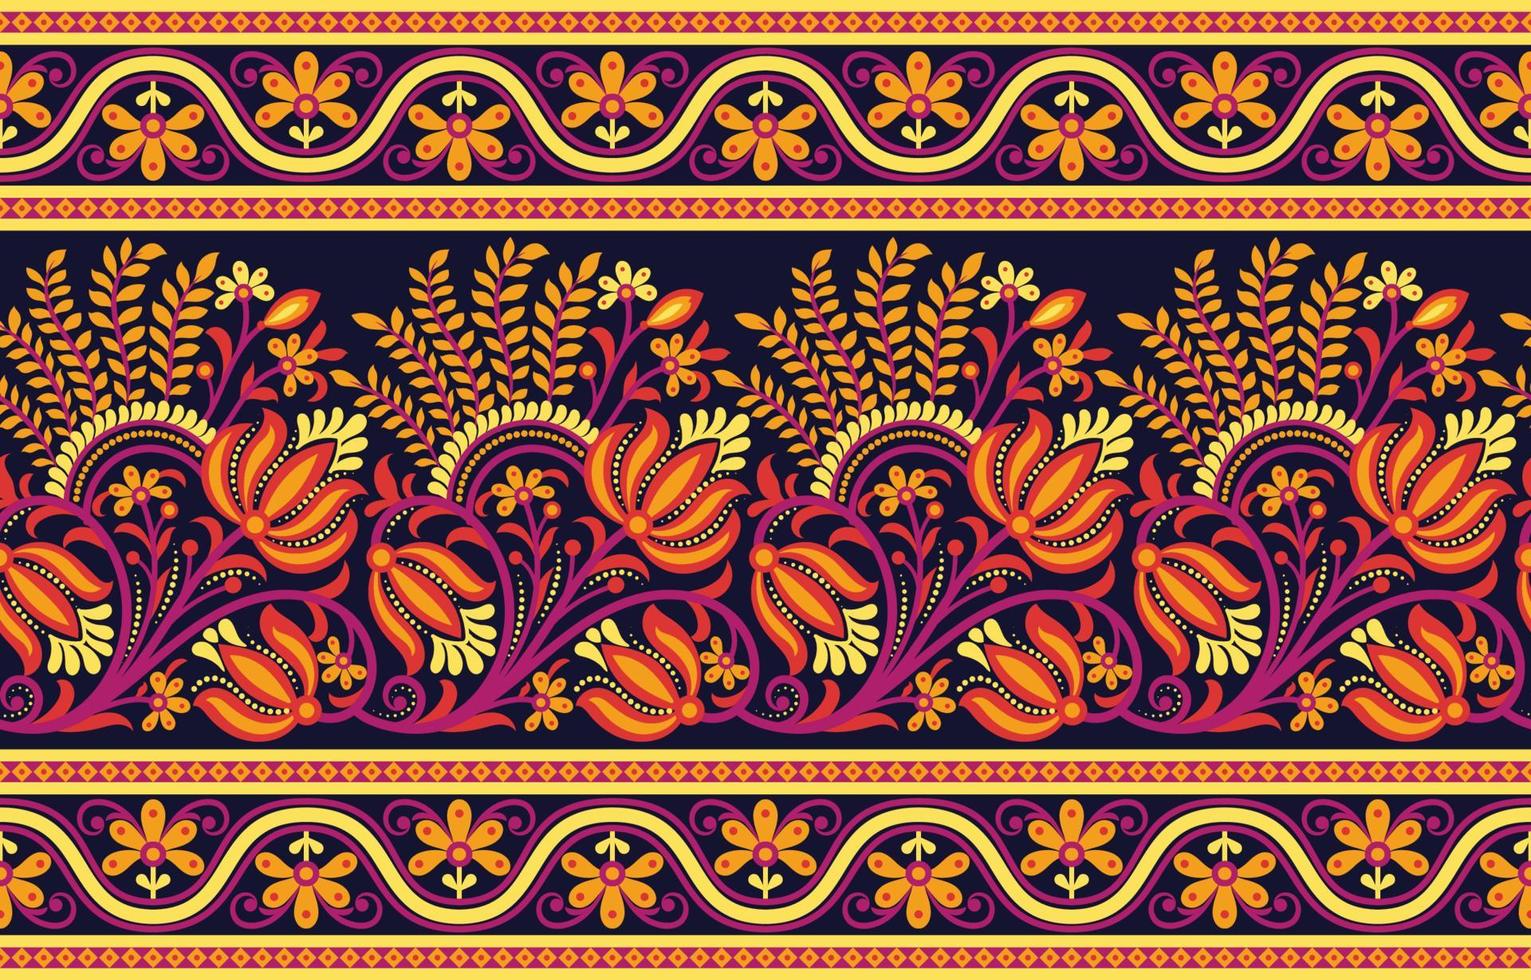 geometrische etnische oosterse patroon traditioneel ontwerp voor achtergrond,tapijt,behang,kleding,inwikkeling,batik,stof,vector illustratie borduurstijl. vector